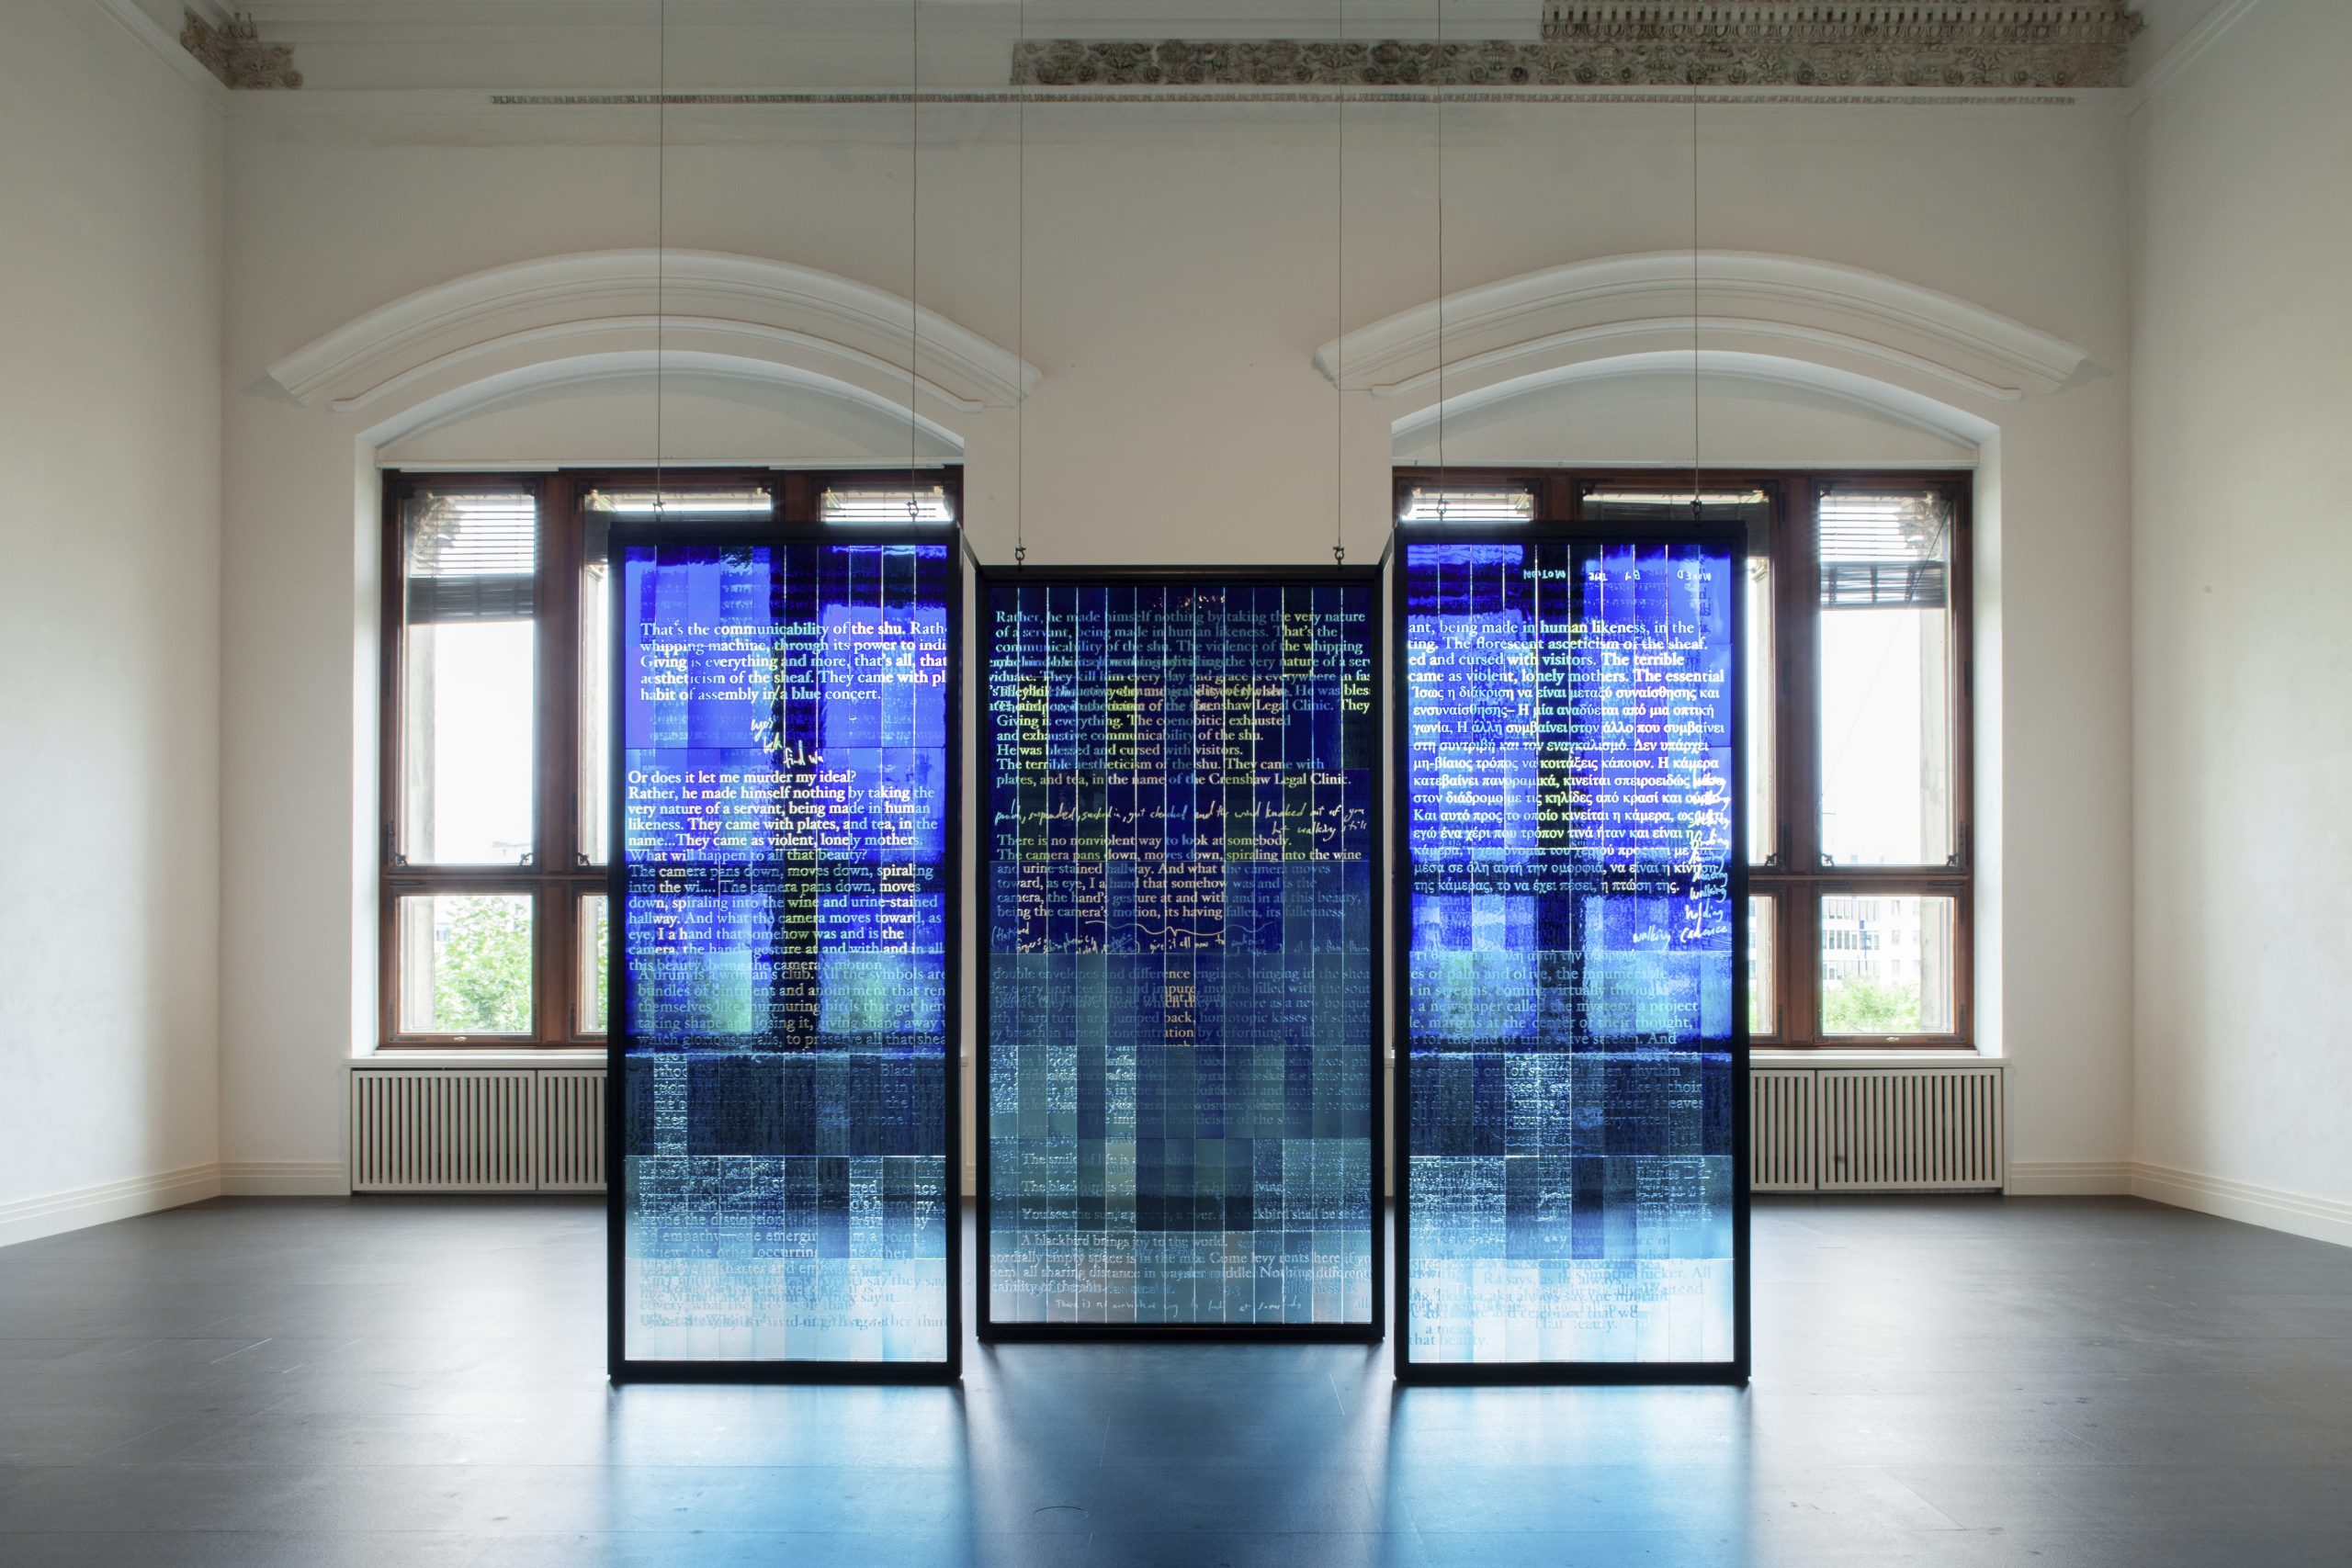 Moderner Glaskunst-Installationsblick in einem Raum mit hohen Decken, Text und Beleuchtung.